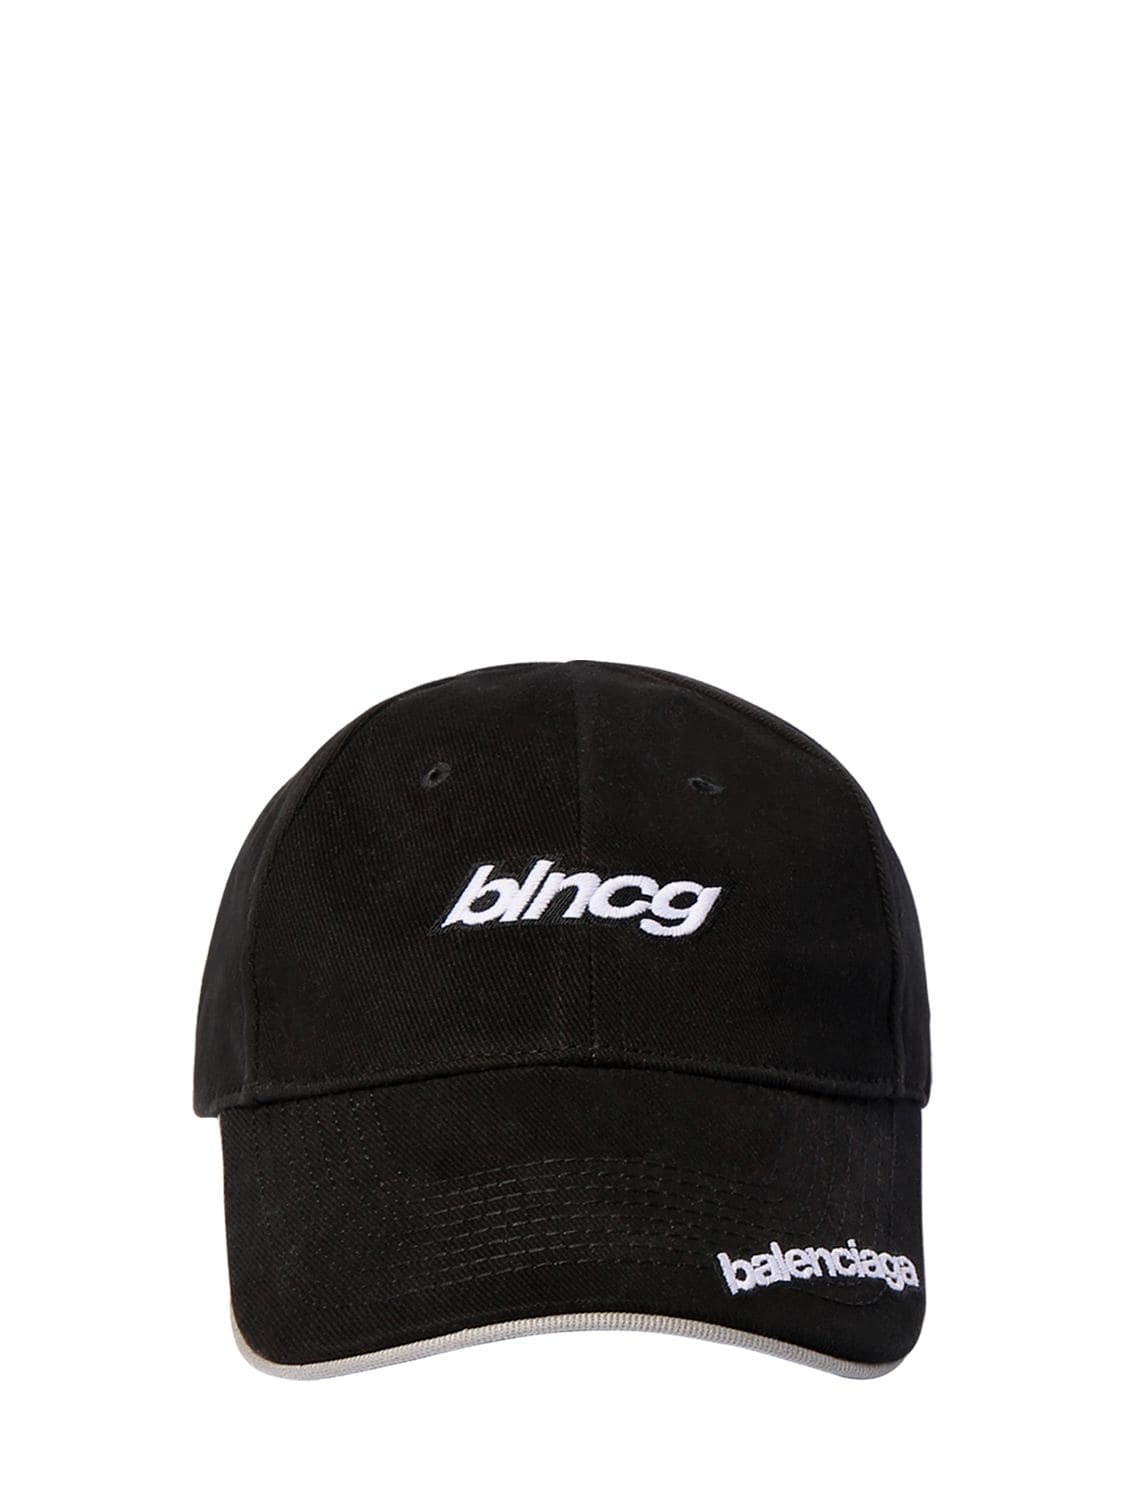 BALENCIAGA “SPEEED”LOGO棒球帽,72IROX013-MTA3NW2